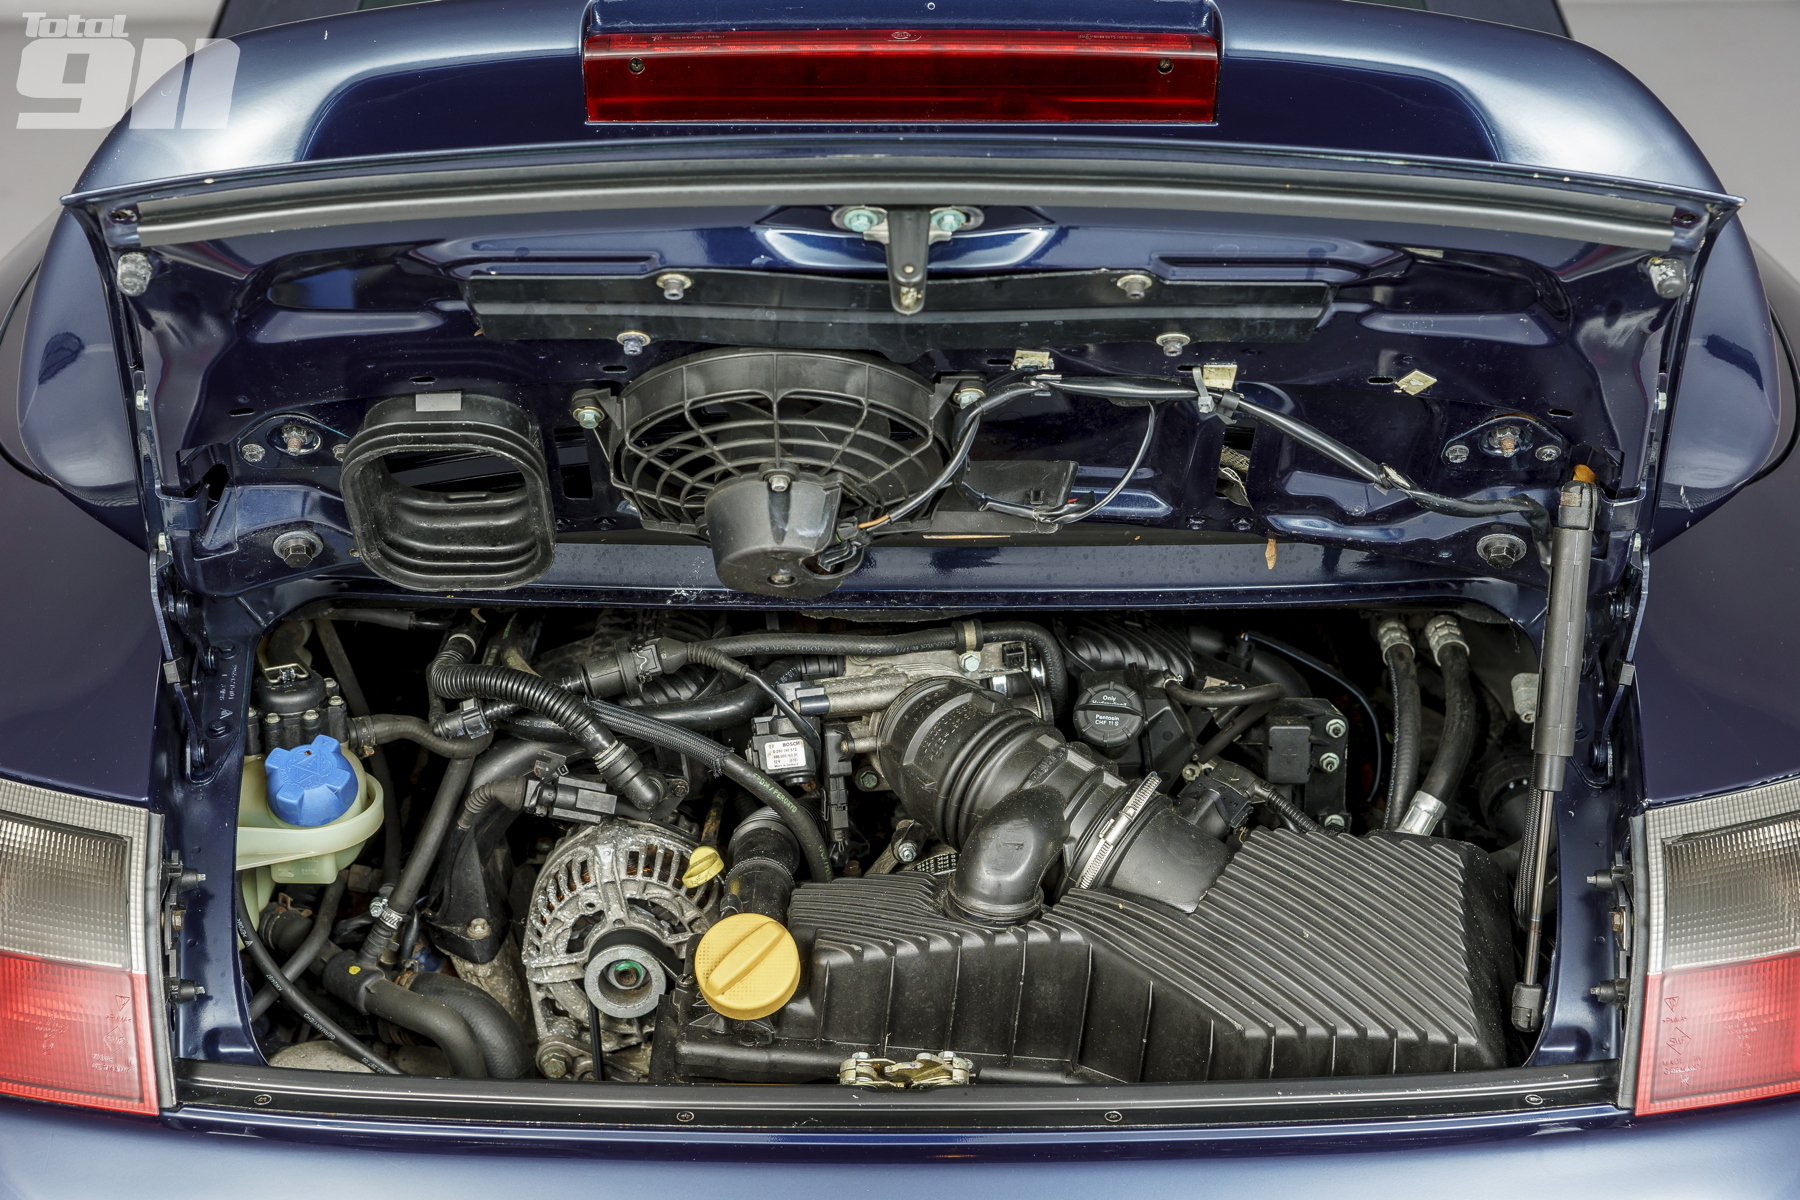 Порше где двигатель. Porsche 996 двигатель. Двигатель Порше 911 996. Porsche 911 996 двигатель. Porsche 996 Turbo engine.